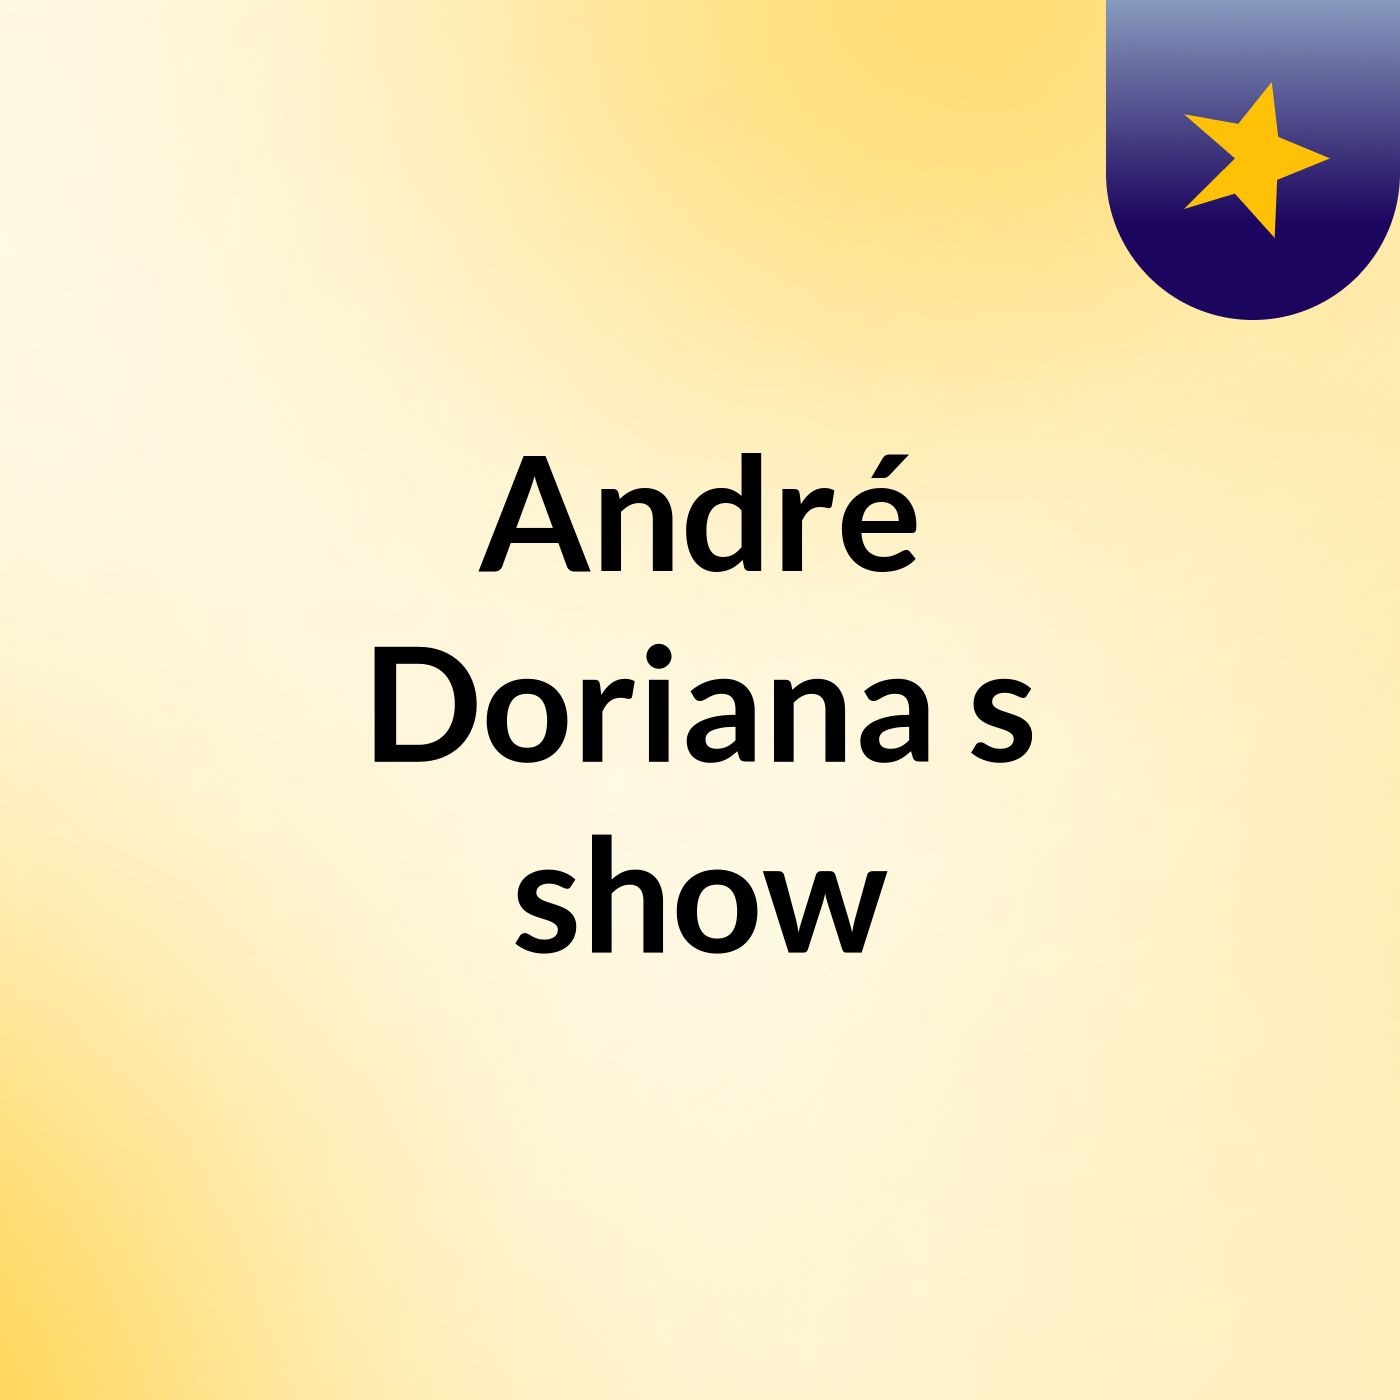 André Doriana's show